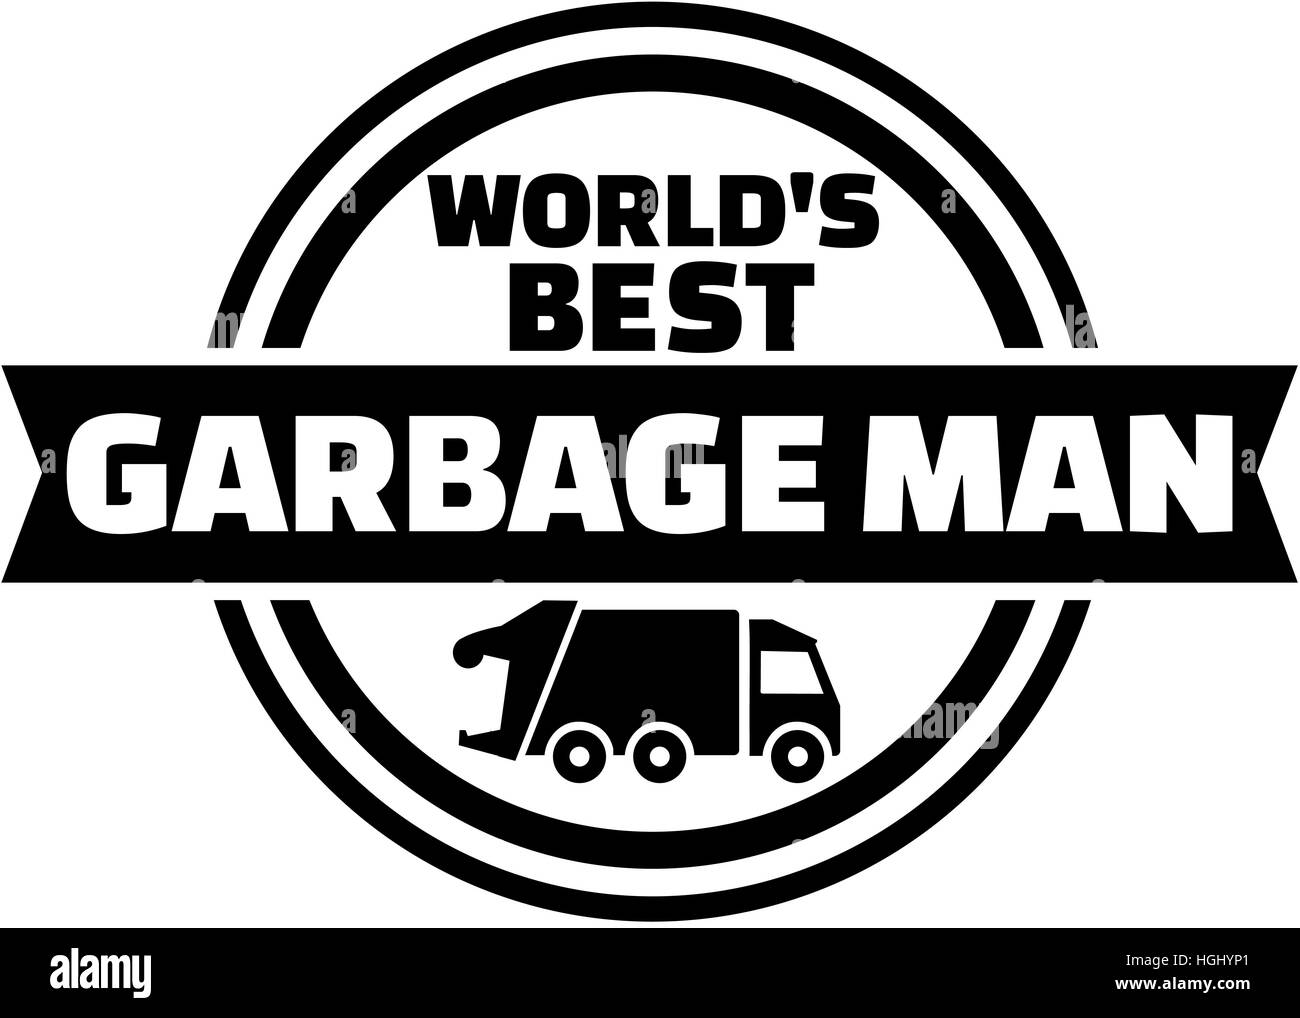 World's best garbage man Stock Photo